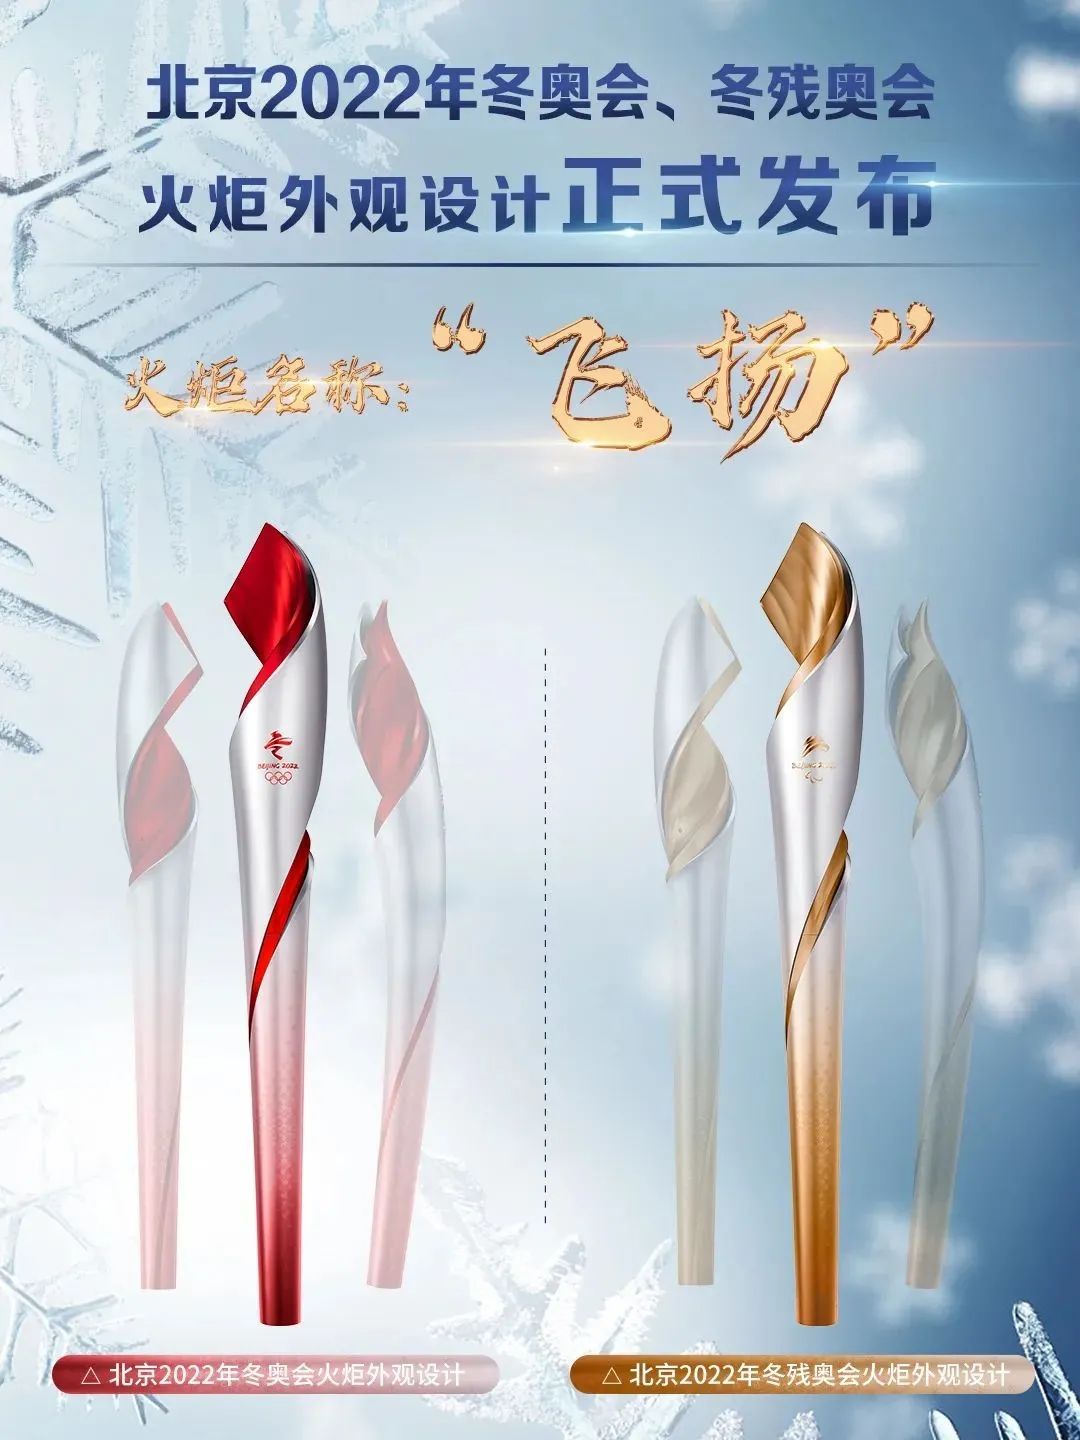 北京冬奥会火炬外形极具动感和活力,颜色为银色与红色,象征 冰火相约